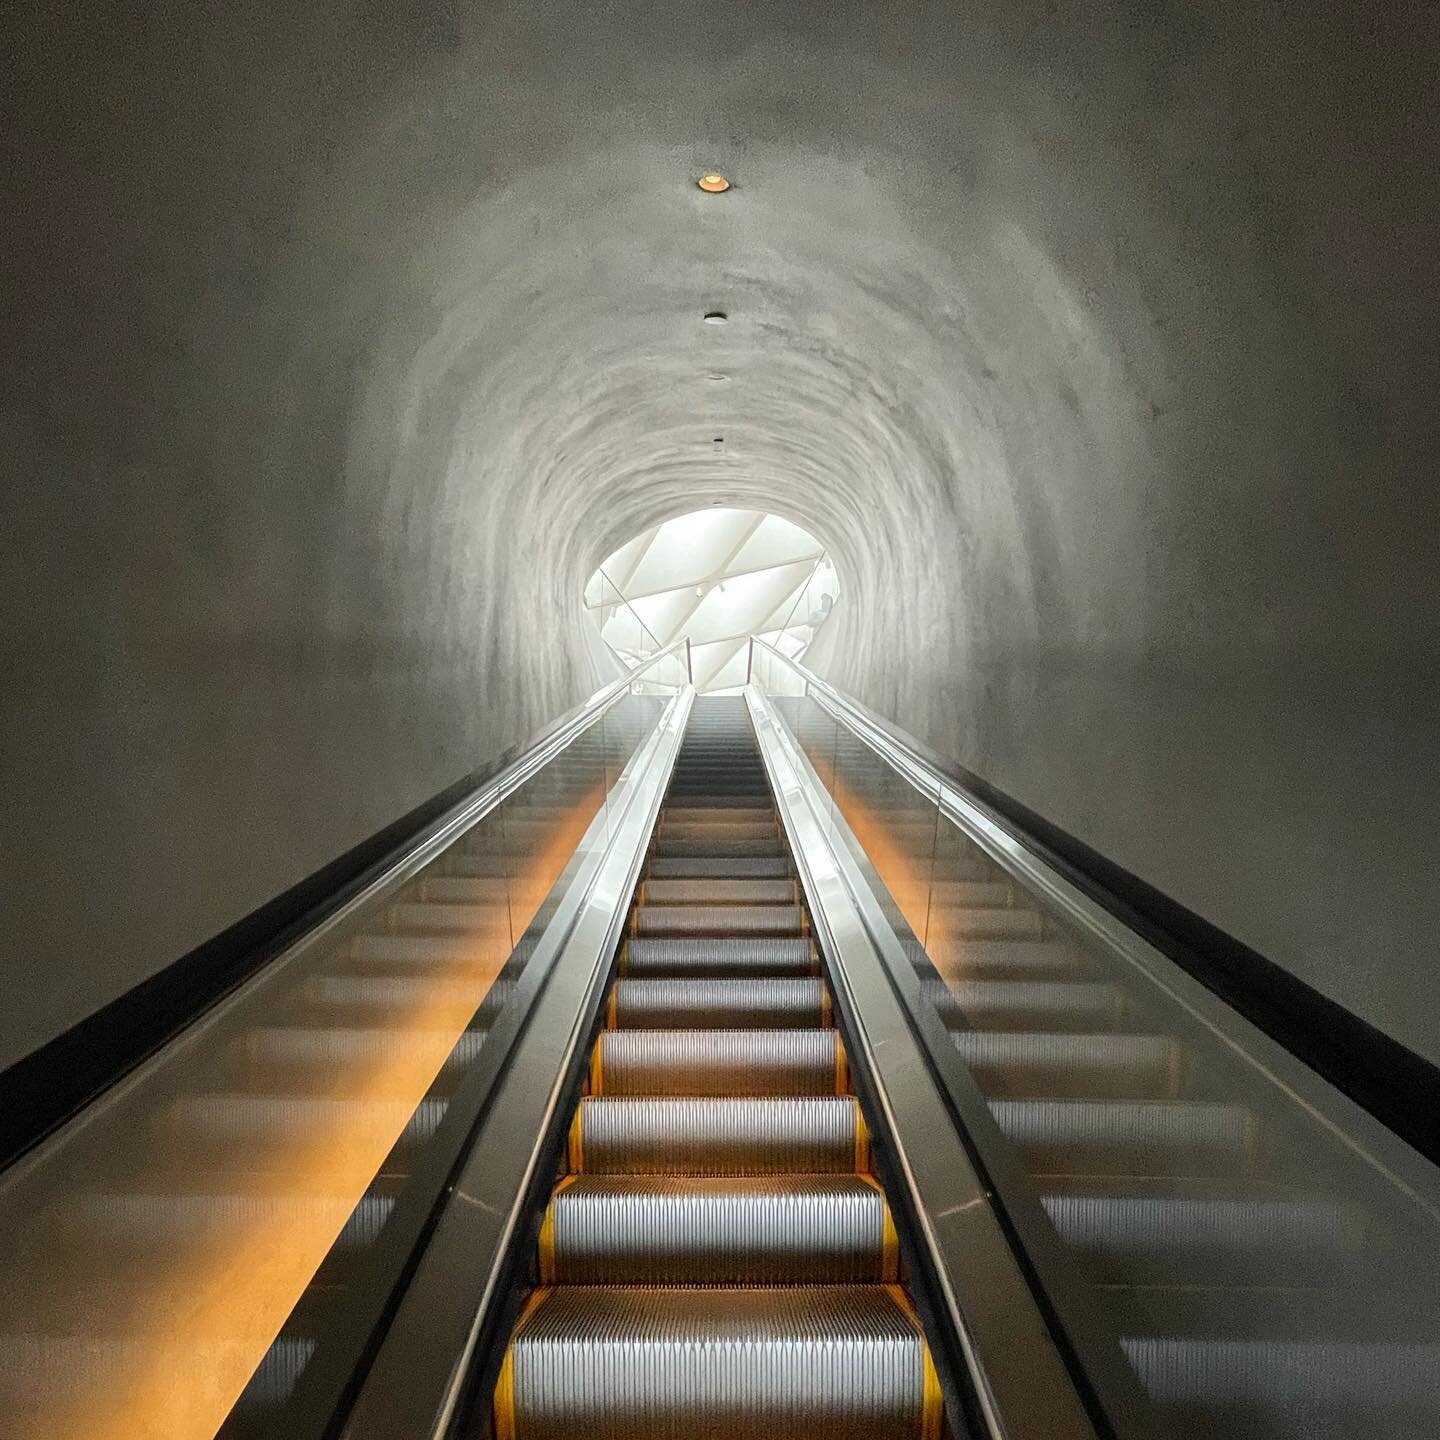 entering the broaaaaaaaaaaaaaaad.
&mdash;

#thebroad #escalator #losangeles #blackandwhite #minimalism #minimalist #minimal #minimal_perfection #architecture_minimal #1_unlimited #architecture #architecture_hunter #conquer_la #discoverla #visitlosang